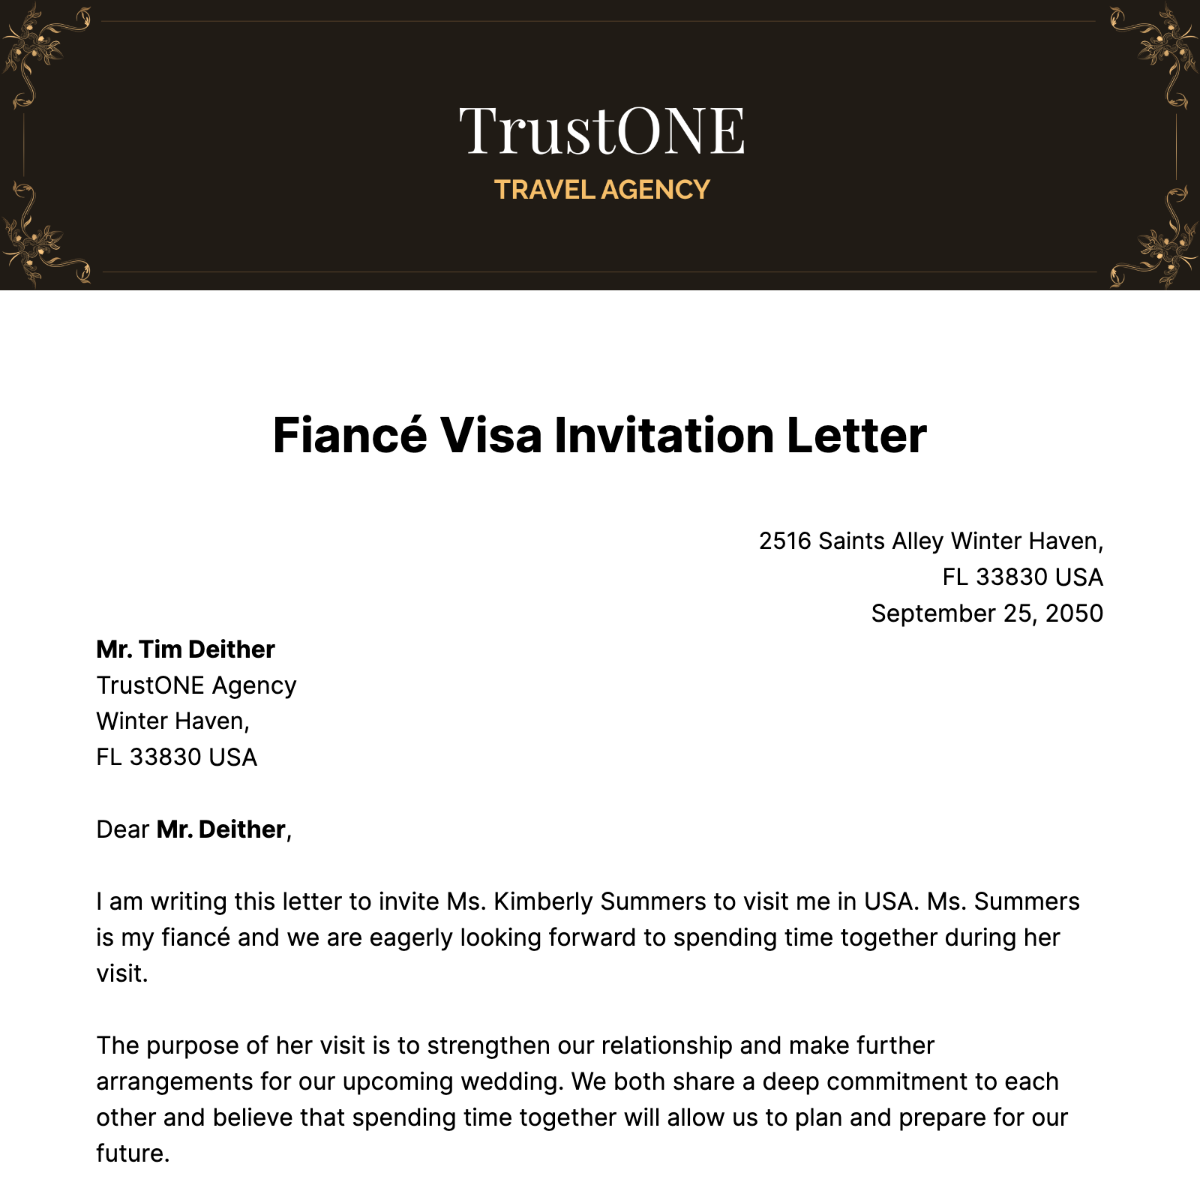 Fiancé Visa Invitation Letter  Template